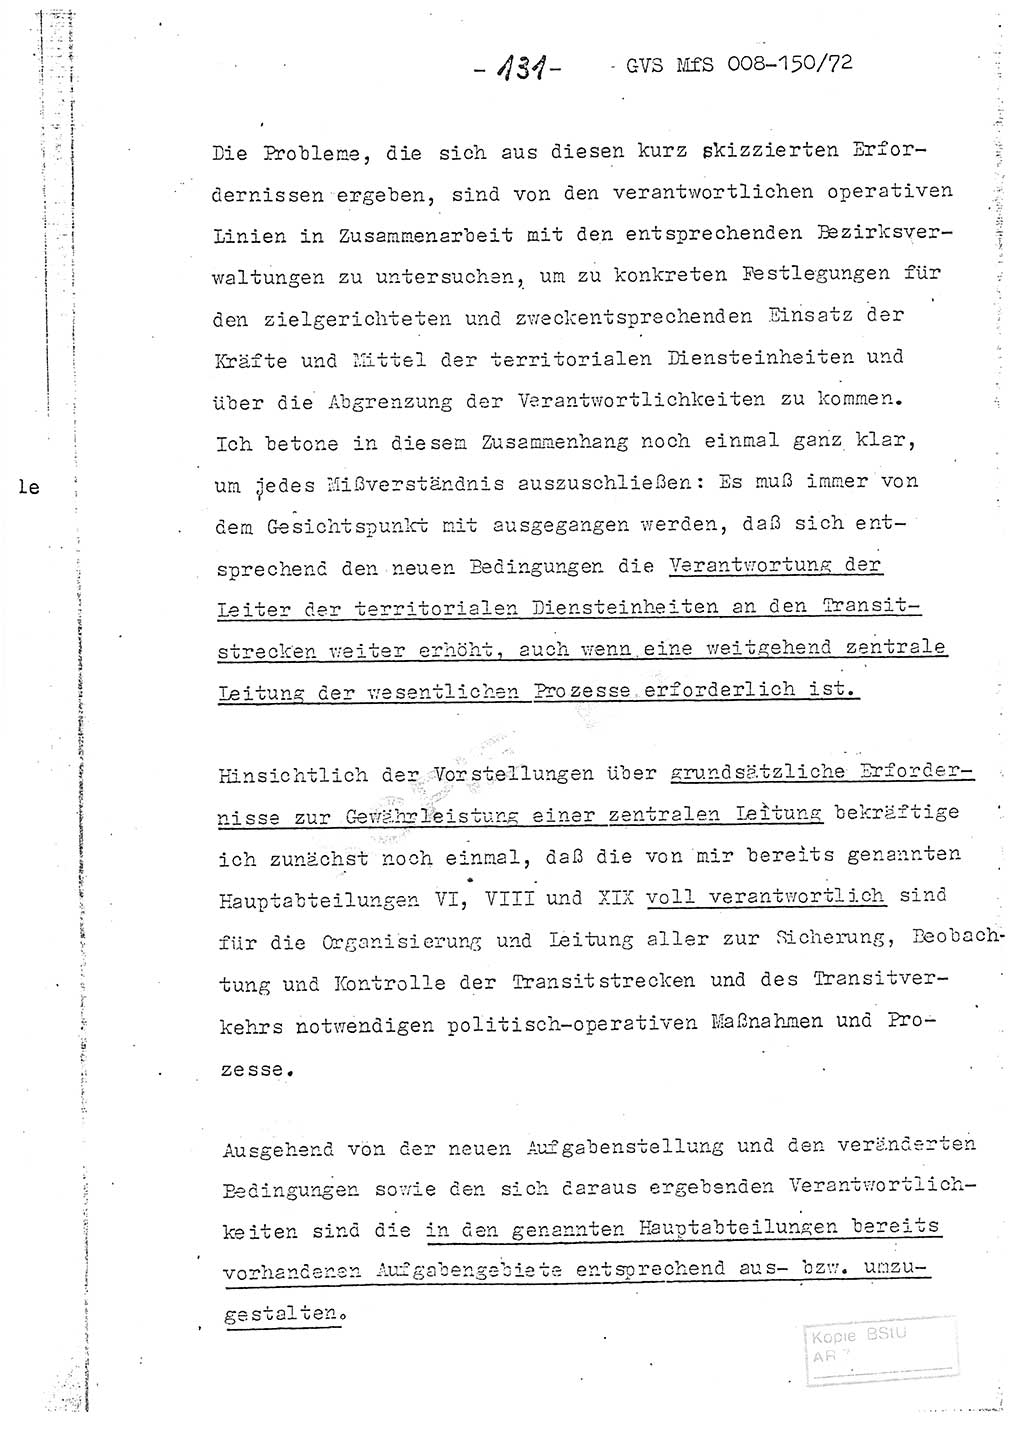 Referat (Entwurf) des Genossen Minister (Generaloberst Erich Mielke) auf der Dienstkonferenz 1972, Ministerium für Staatssicherheit (MfS) [Deutsche Demokratische Republik (DDR)], Der Minister, Geheime Verschlußsache (GVS) 008-150/72, Berlin 25.2.1972, Seite 131 (Ref. Entw. DK MfS DDR Min. GVS 008-150/72 1972, S. 131)